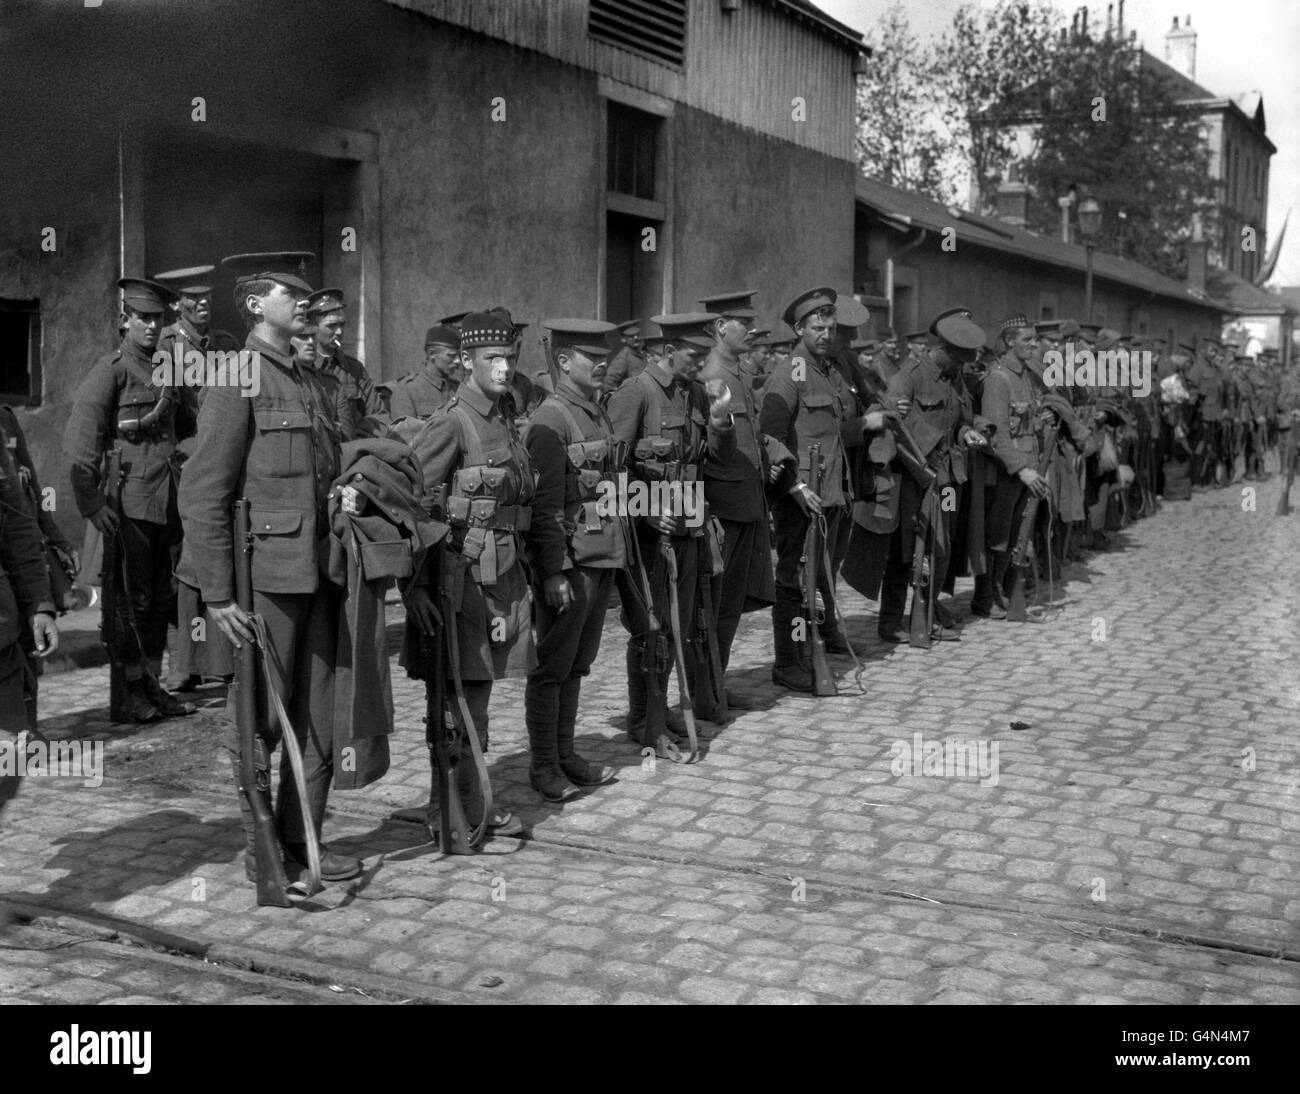 Britische "Tommies" verschiedener englischer und schottischer Regimenter, die während des Ersten Weltkriegs auf einer gepflasterten Straße in Frankreich auf dem Weg zur Front aufgestellt wurden. Stockfoto